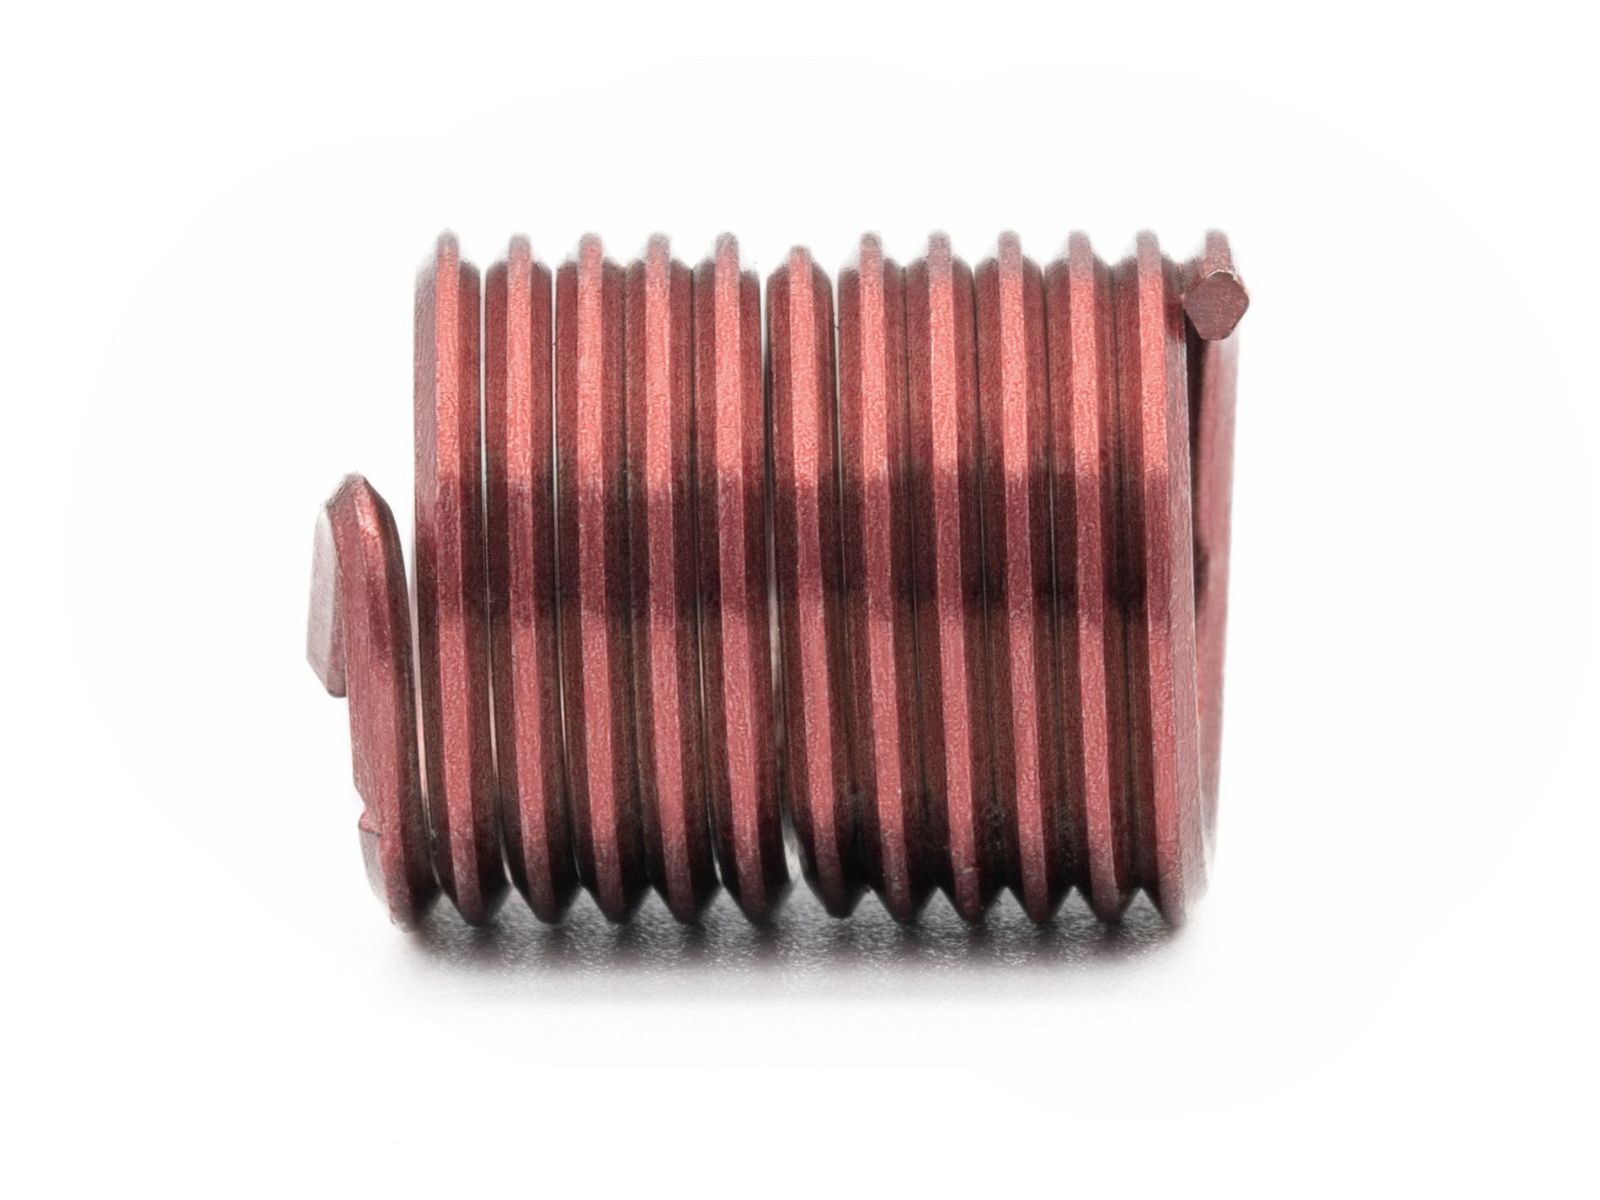 BaerCoil Wire Thread Inserts M 4 x 0.7 - 2.0 D (8 mm) - screw grip (screw locking) - 10 pcs.